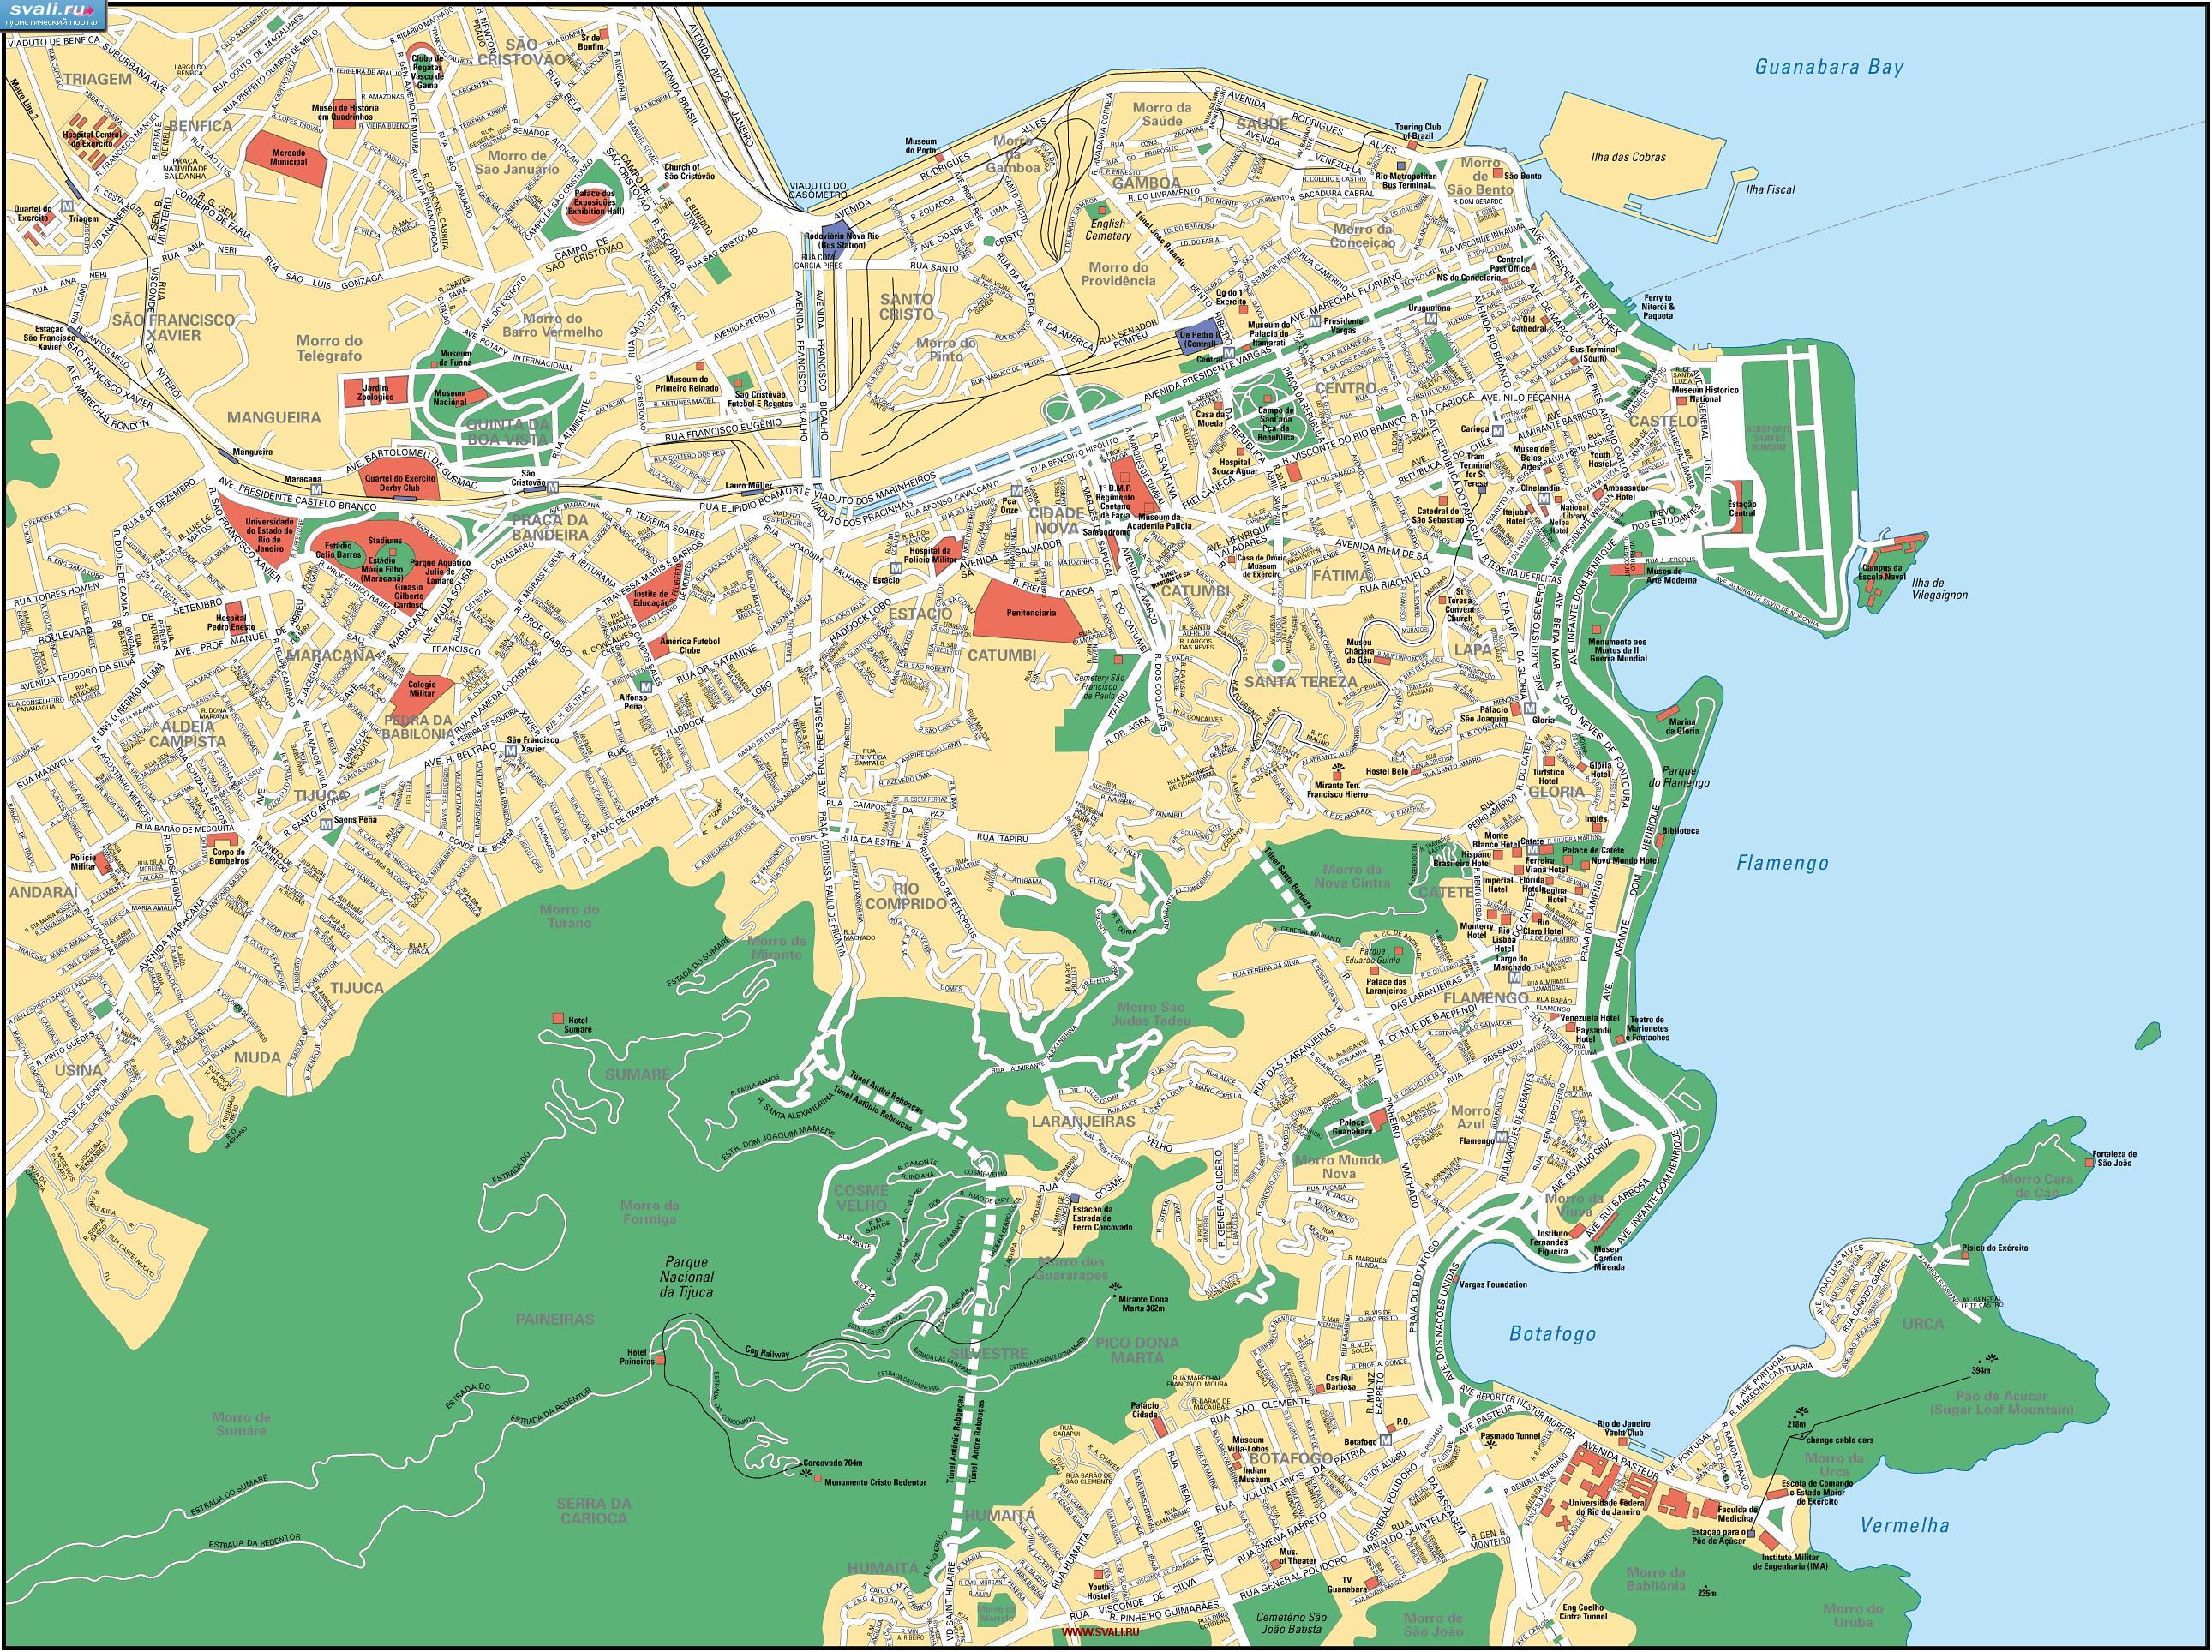 Туристическая карта центра Рио-Де-Жанейро, Бразилия (португ.)